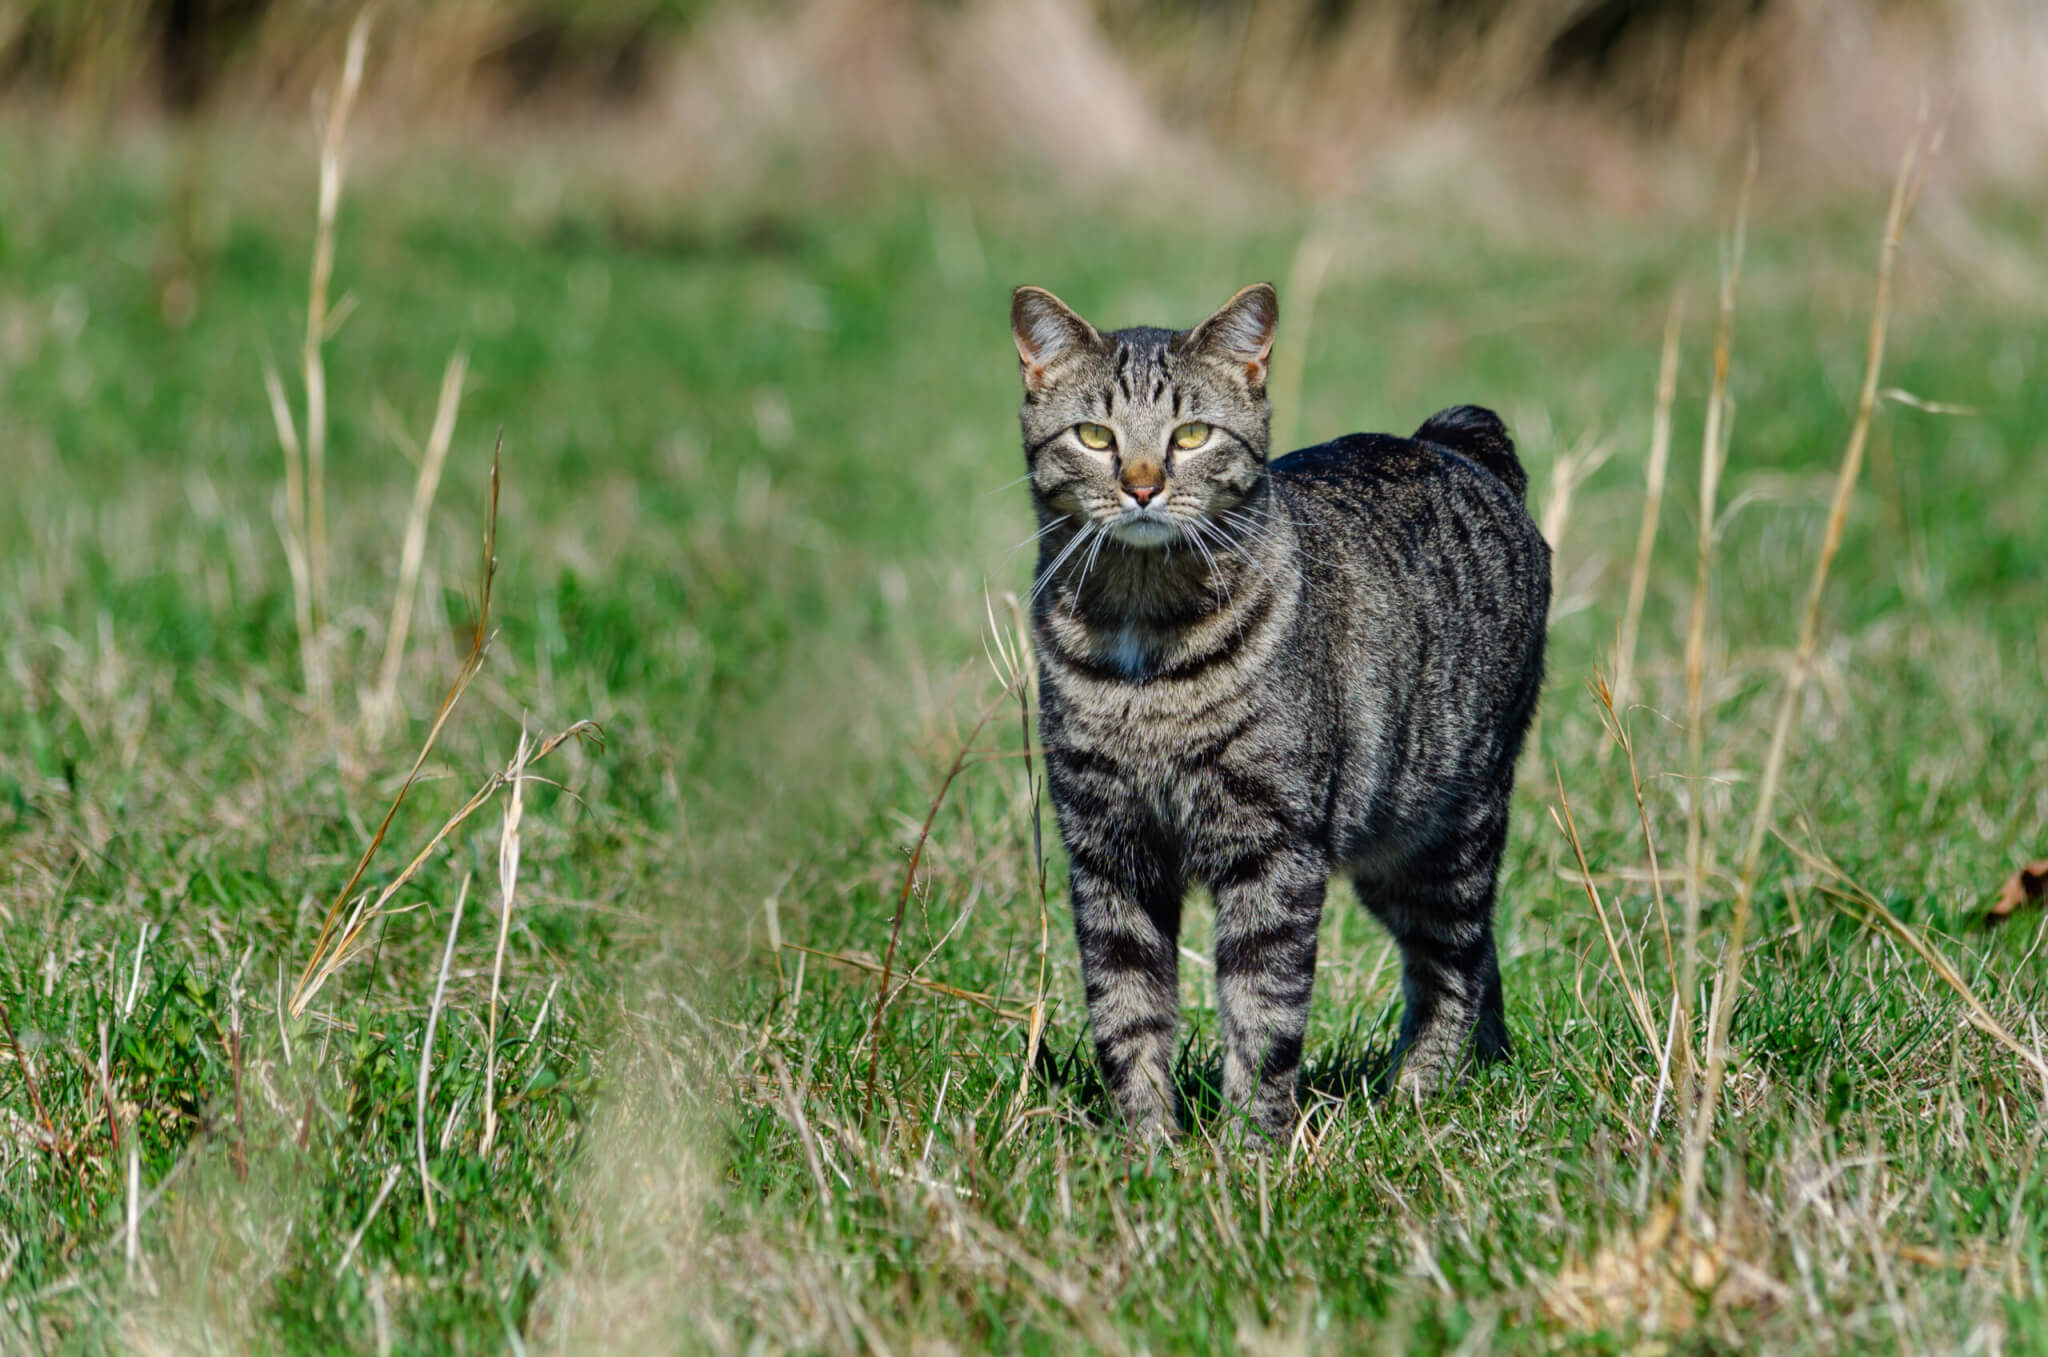 Manx cat in a field